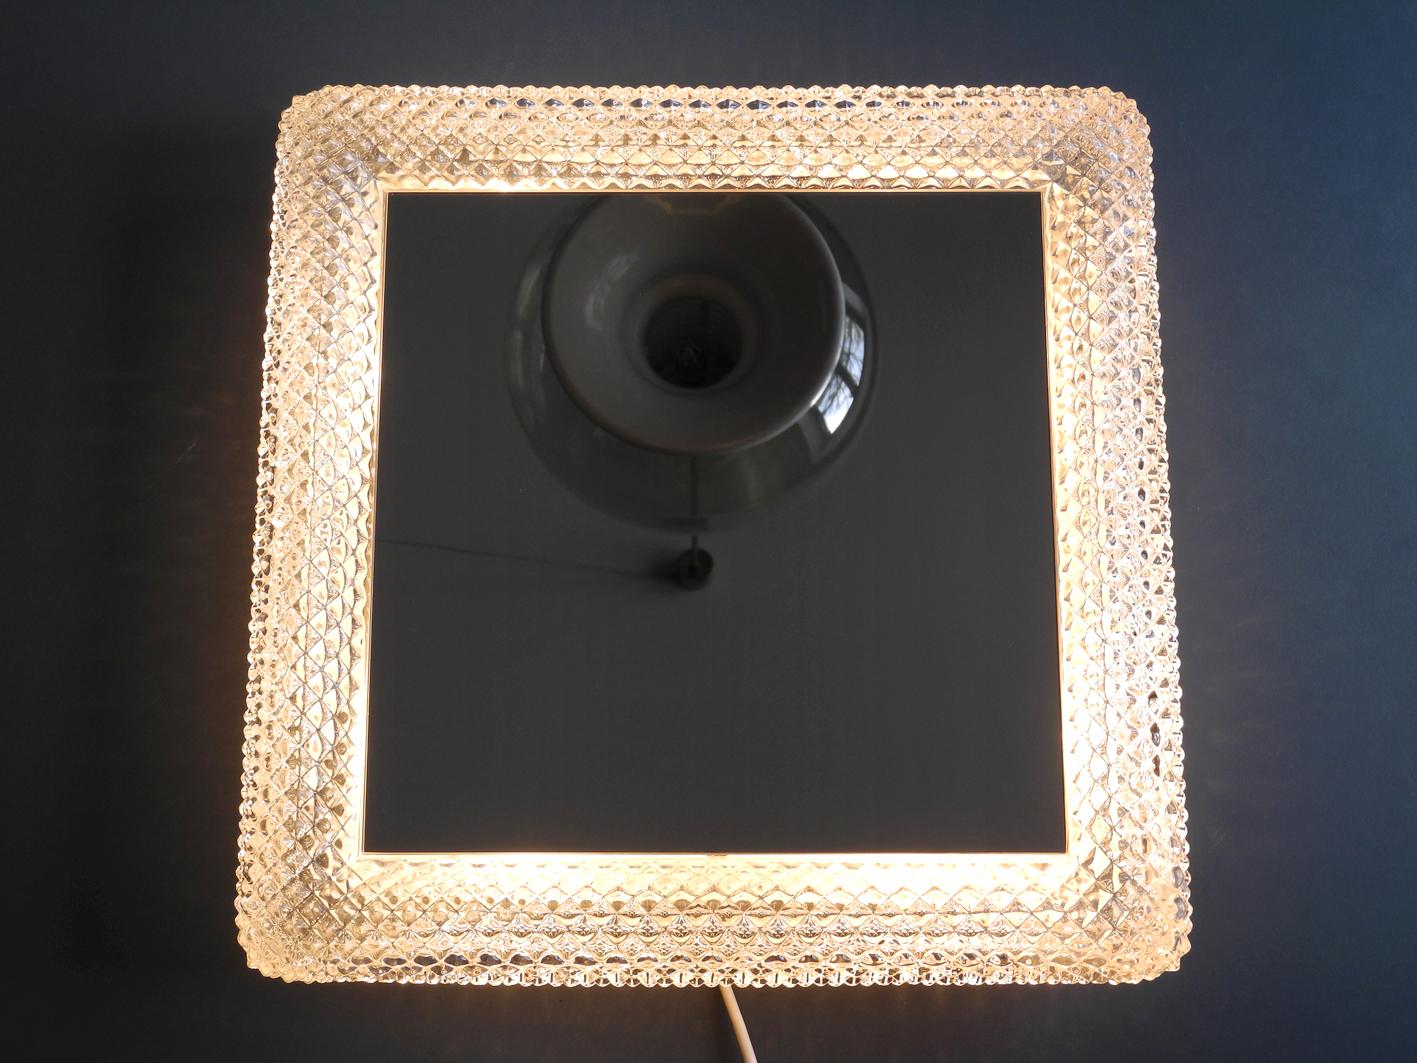 Schöner originaler beleuchteter quadratischer Limburger Kristallglasspiegel aus den 1960er Jahren.
Sehr hohe Verarbeitungsqualität in sehr gutem Zustand. Erzeugt ein sehr schönes Licht.
Keine Schäden an der gesamten Lampe.
Mit vier E14-Fassungen